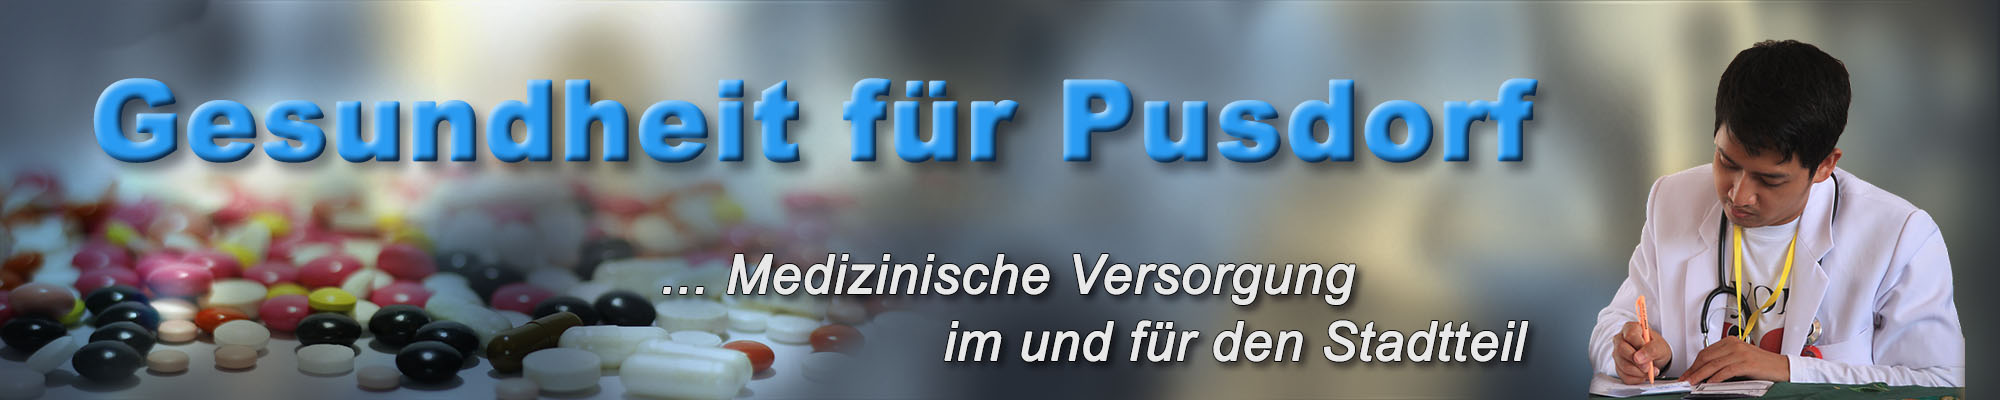 pusdorf.info - Gesundheit und Medizin